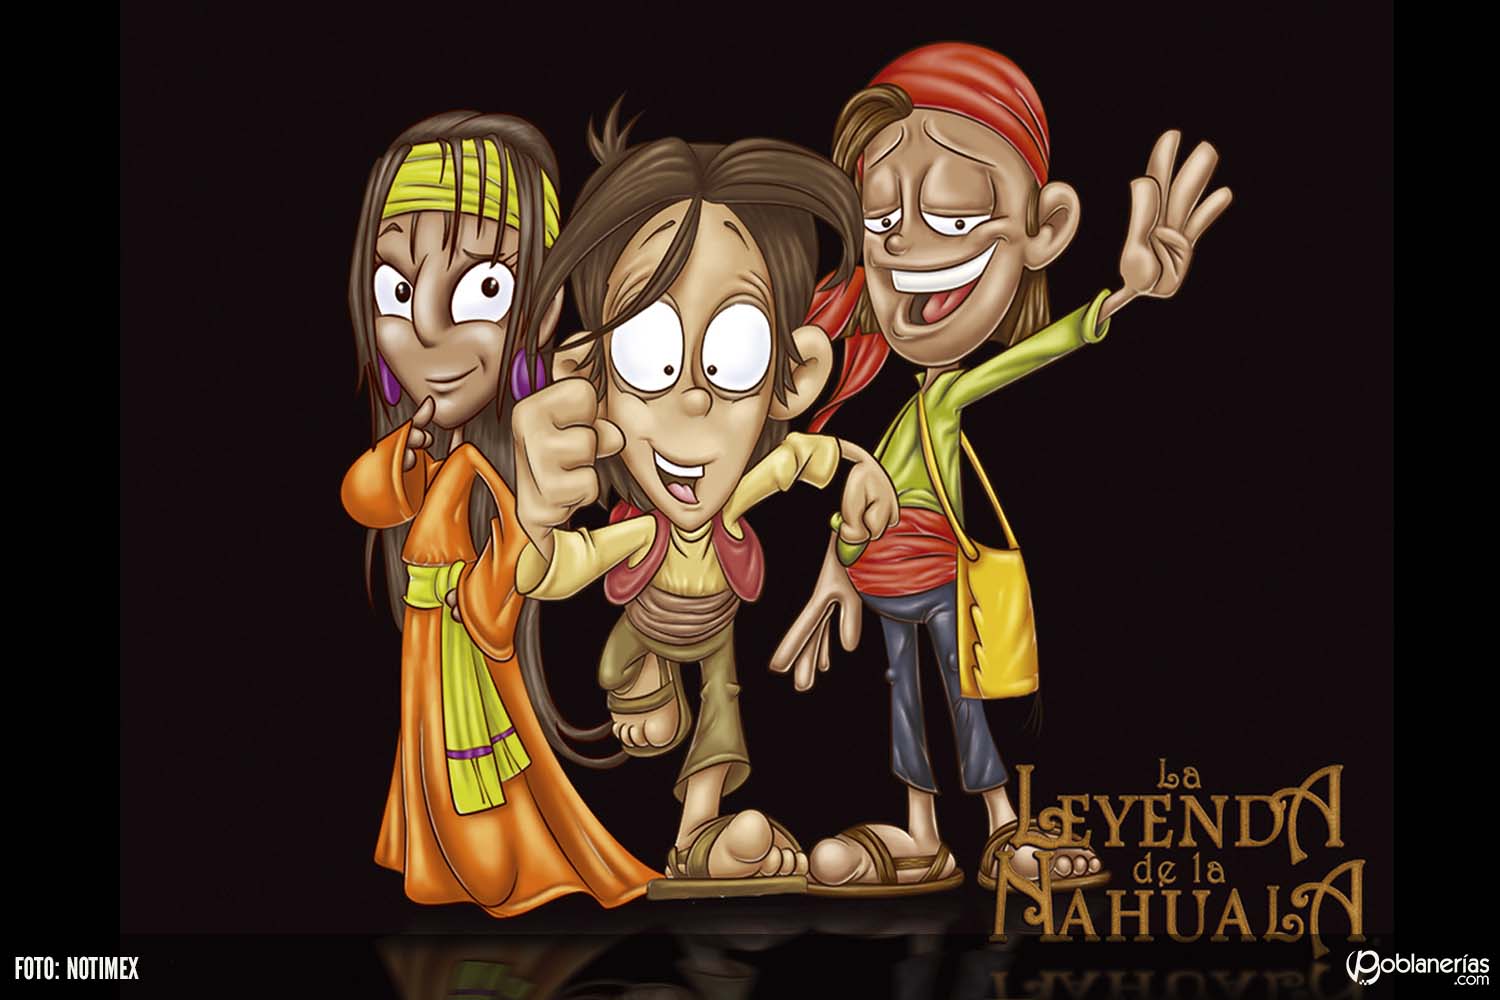 2007 The Legend Of The Nahuala